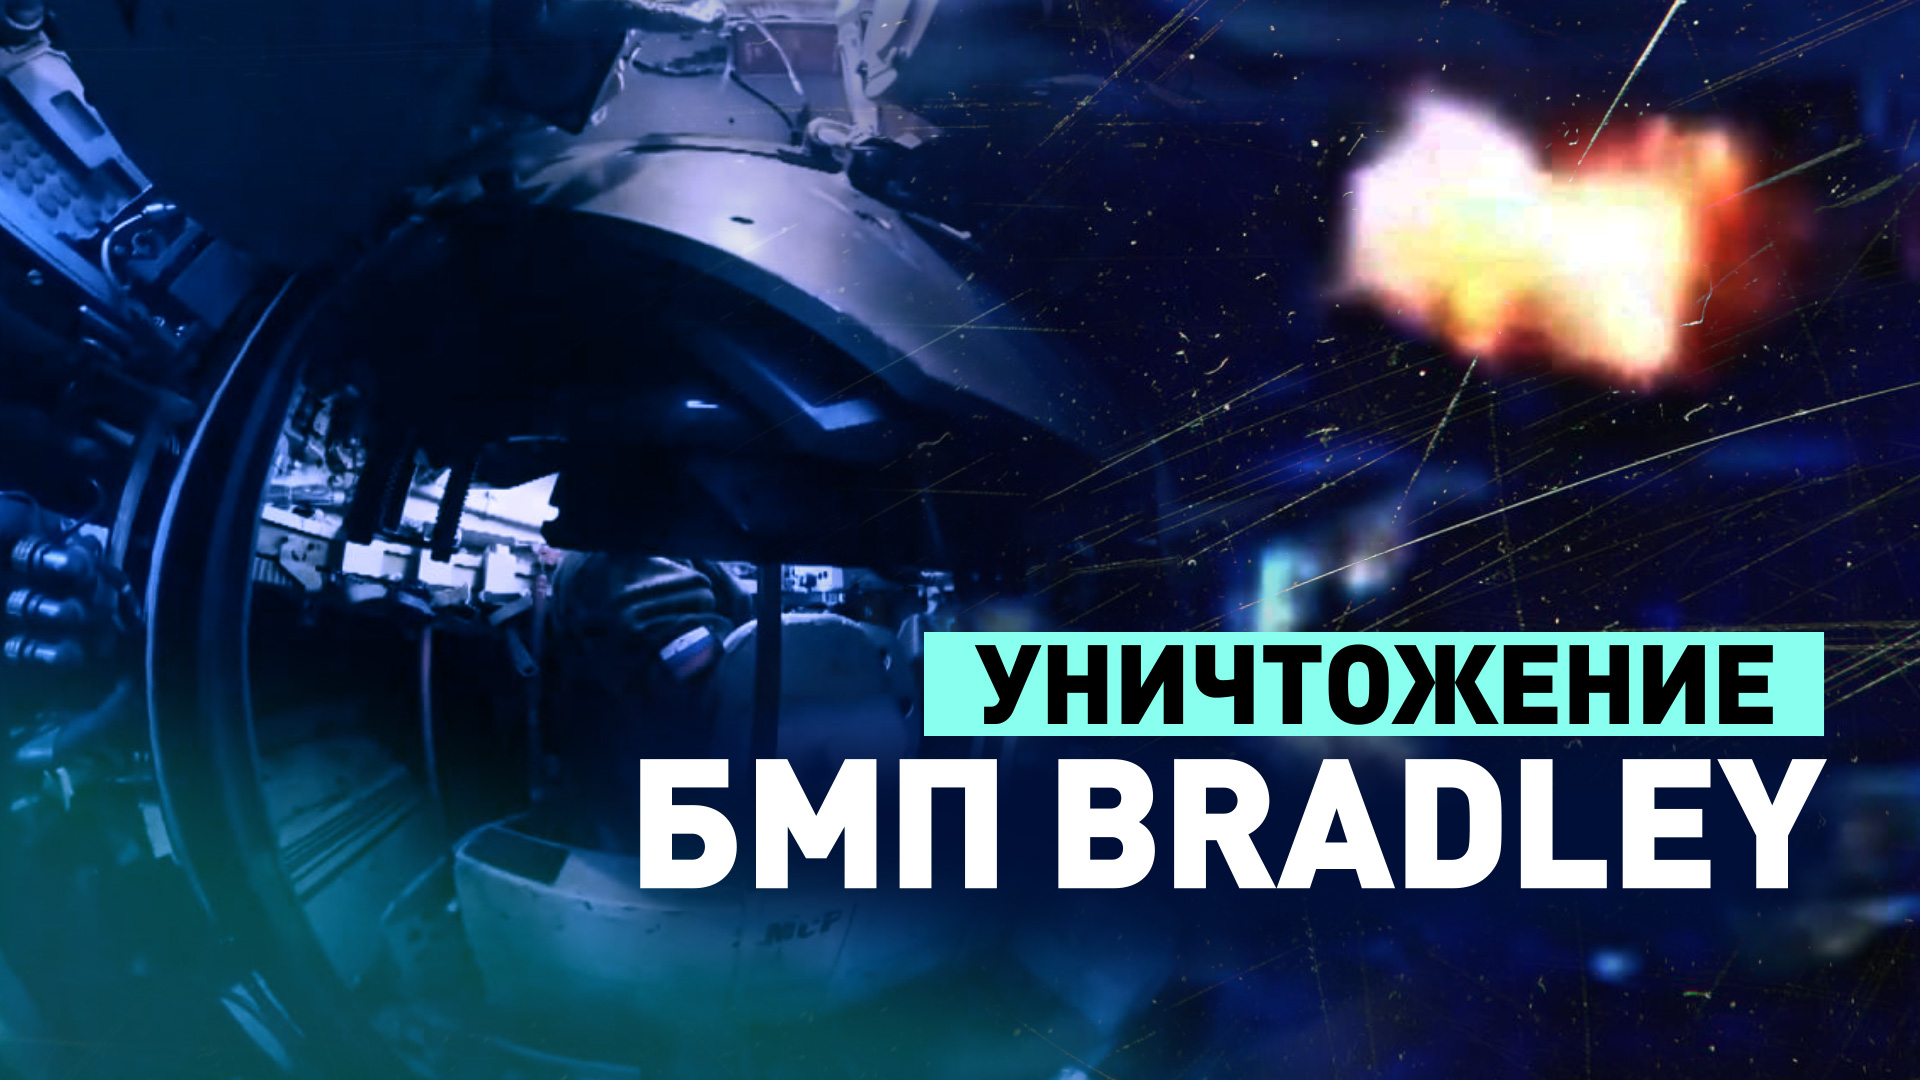 Экипаж БМП-3 ВС РФ уничтожил вражескую БМП Bradley на Артёмовском направлении